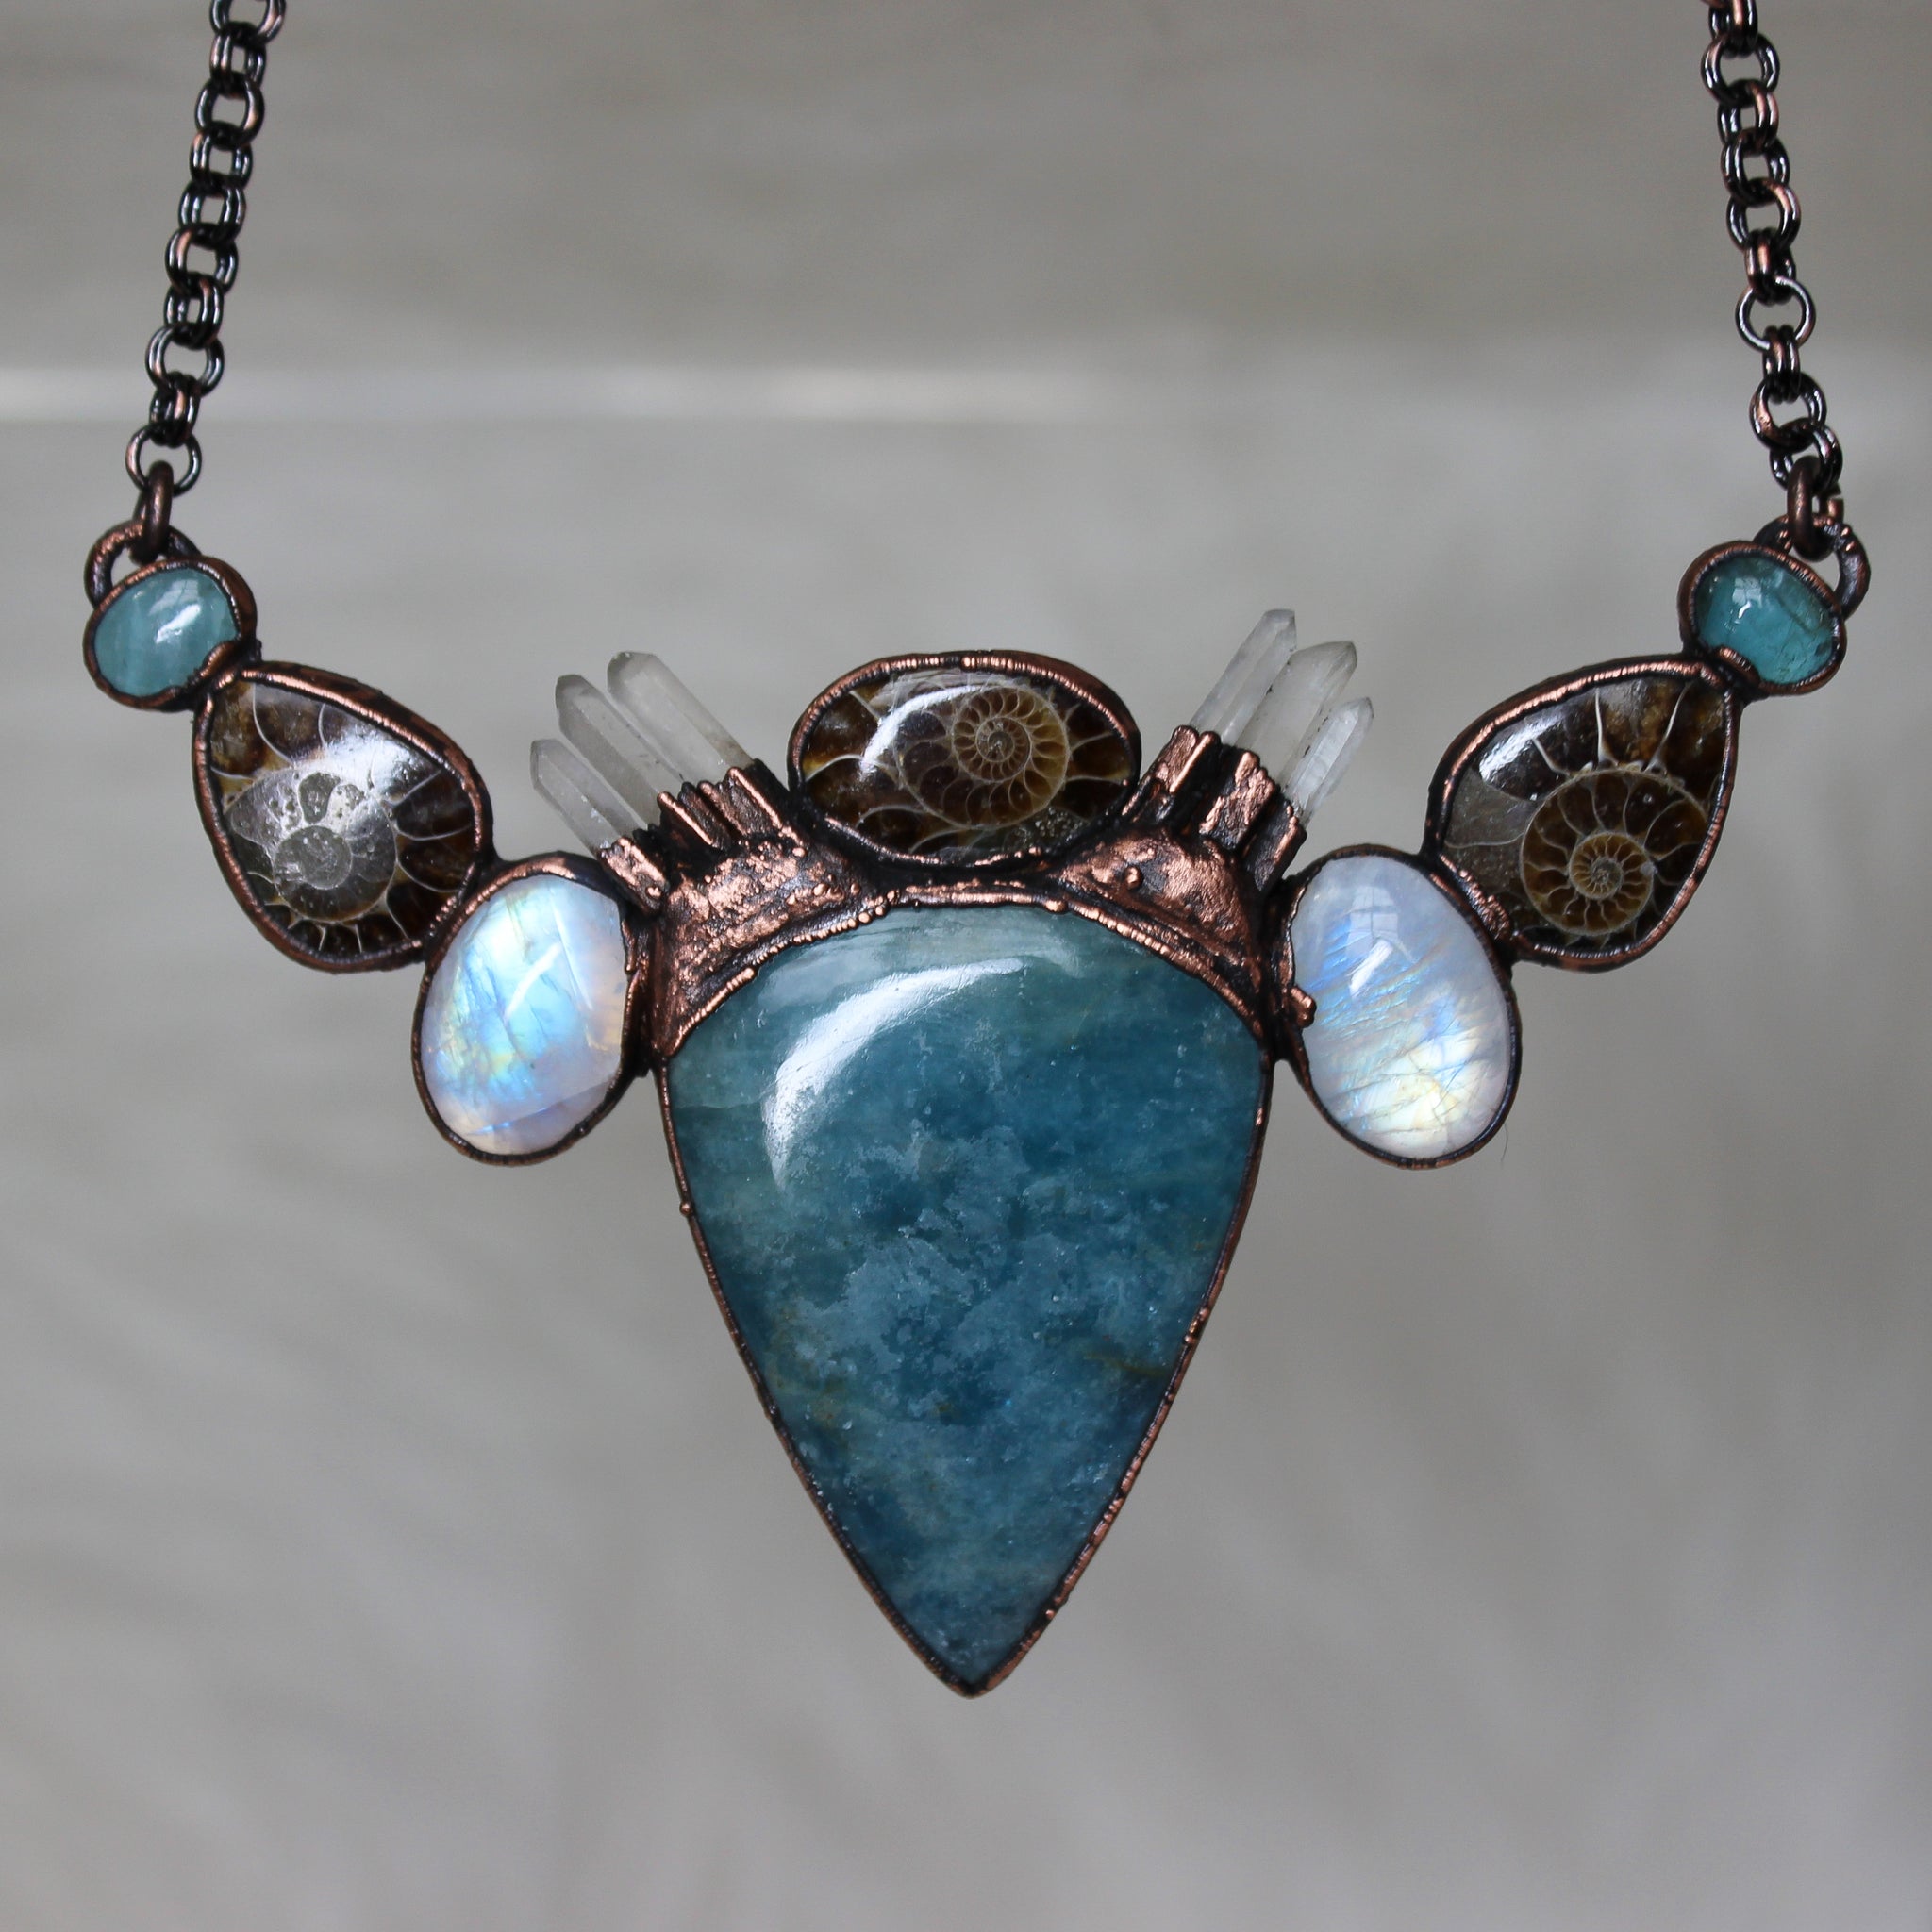 The Aquatic Queen Bib necklace